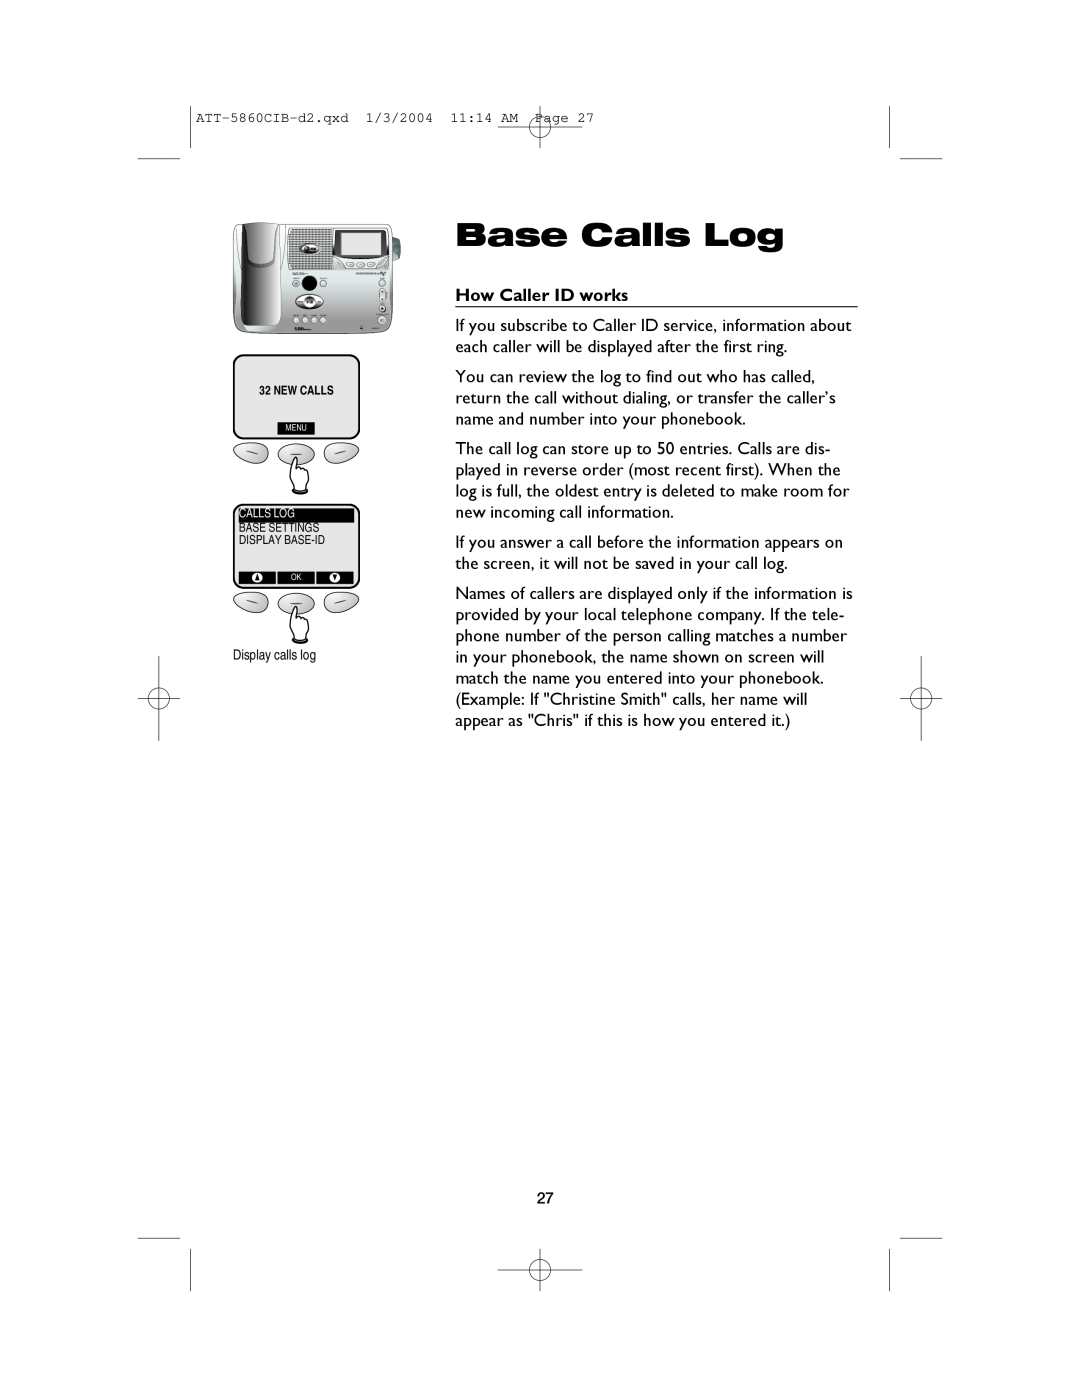 AT&T E5860 user manual Base Calls Log, How Caller ID works, Display calls log 